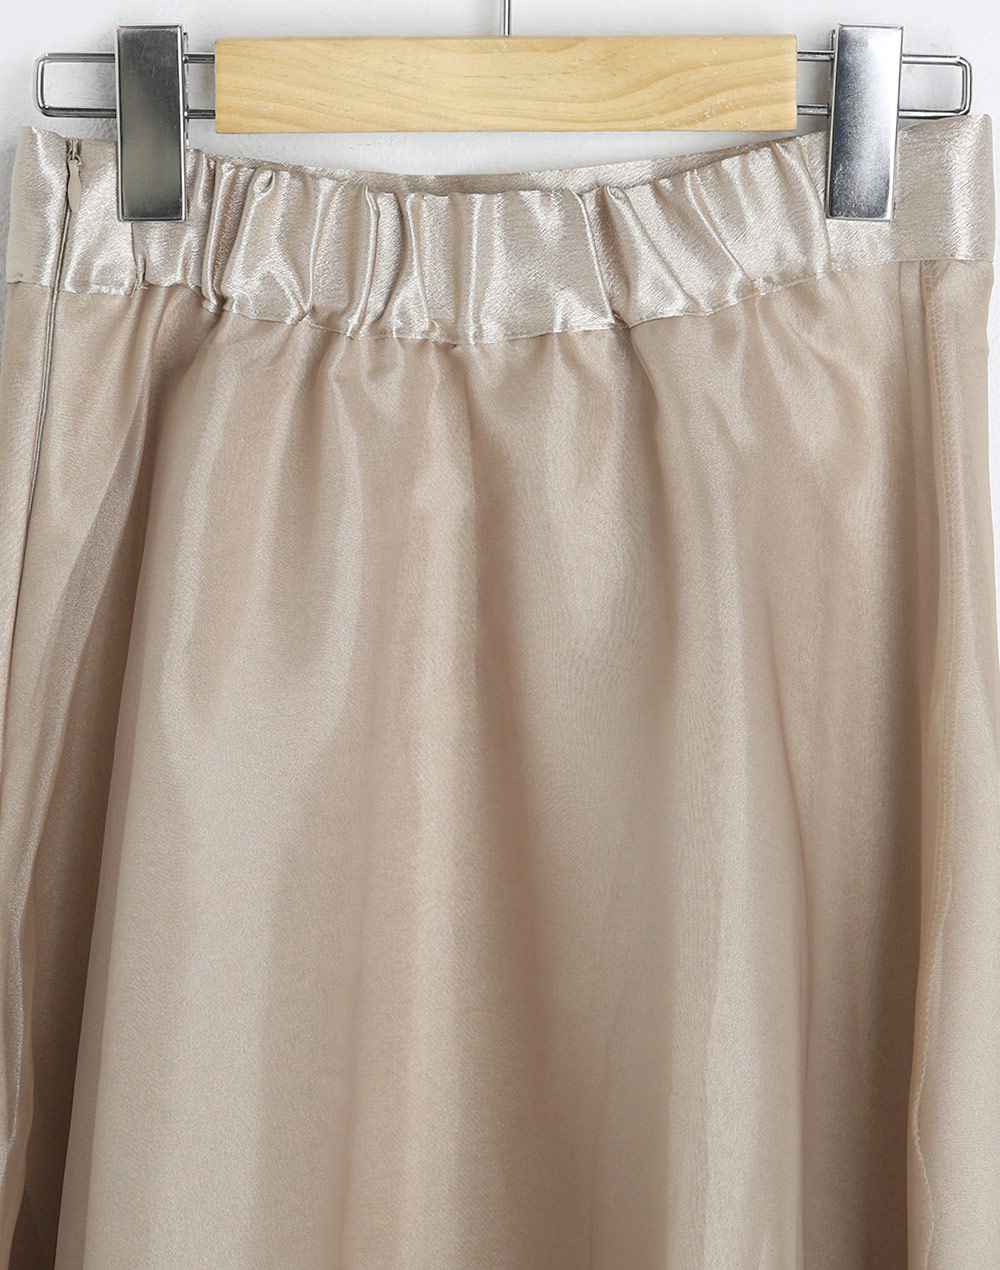 シアーフレアスカート・b283404（スカート/スカート）| cho____07 | 東京ガールズマーケット